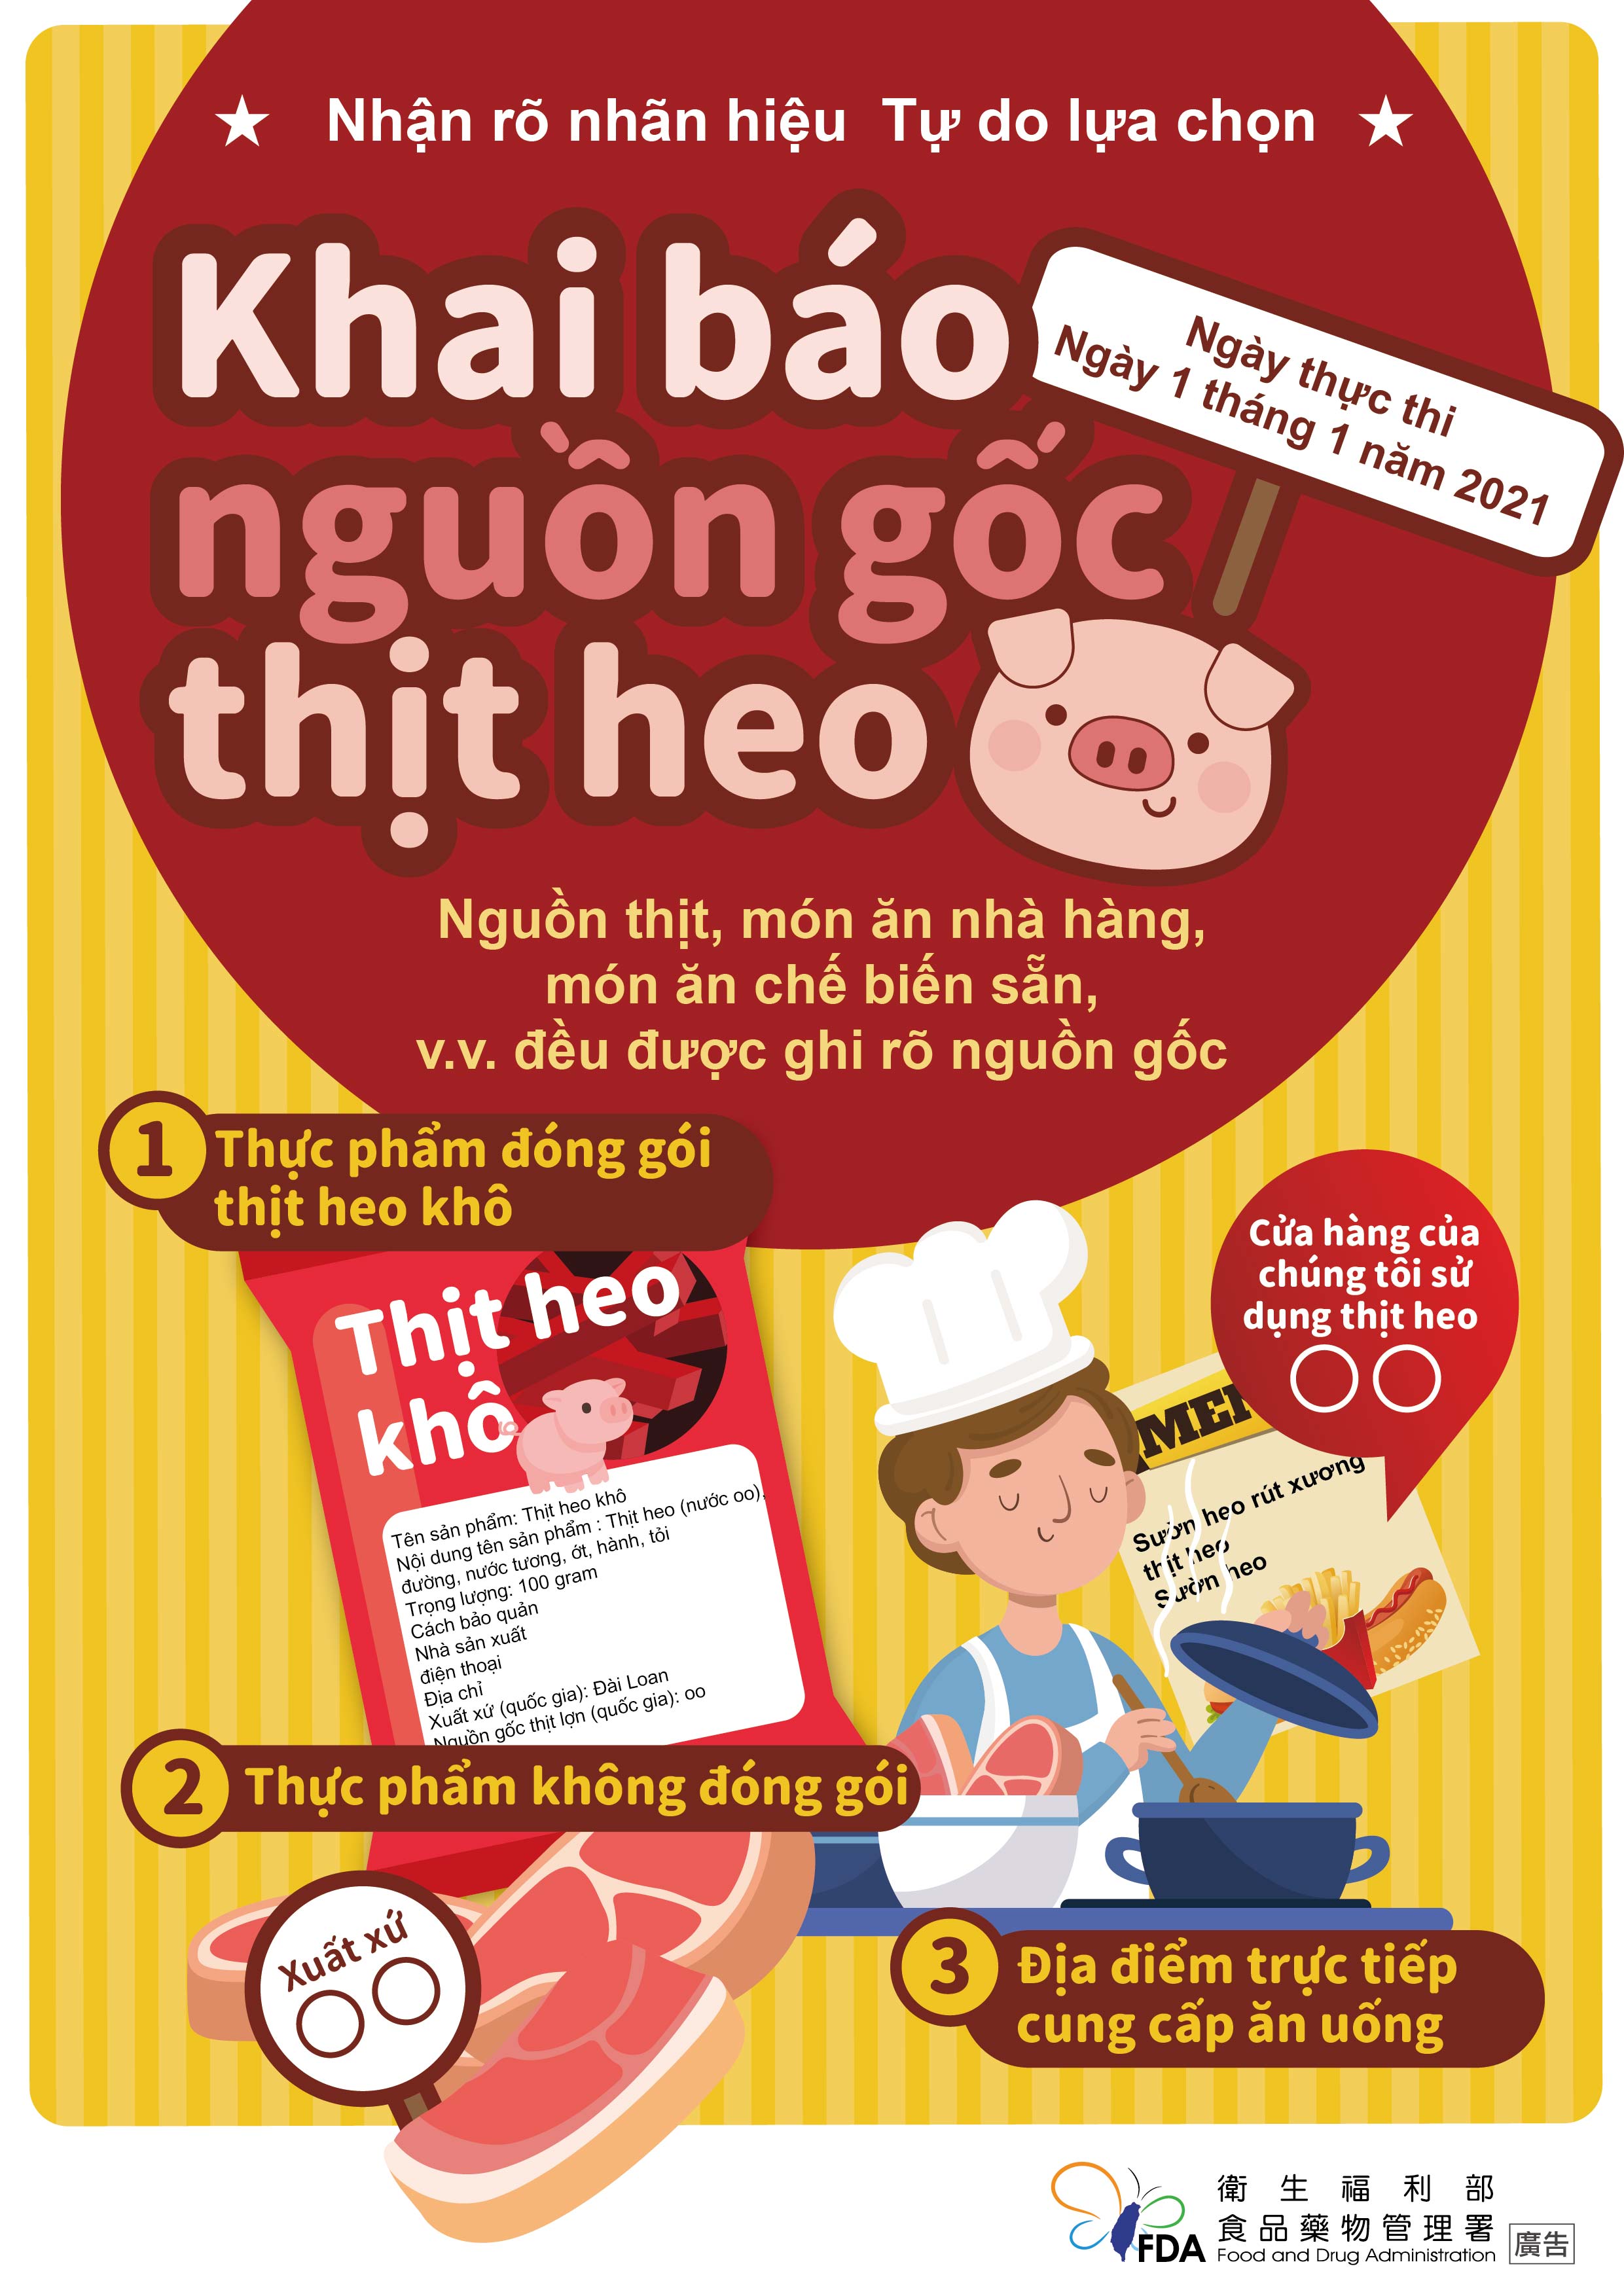 豬肉原料原產地標示(越南文)